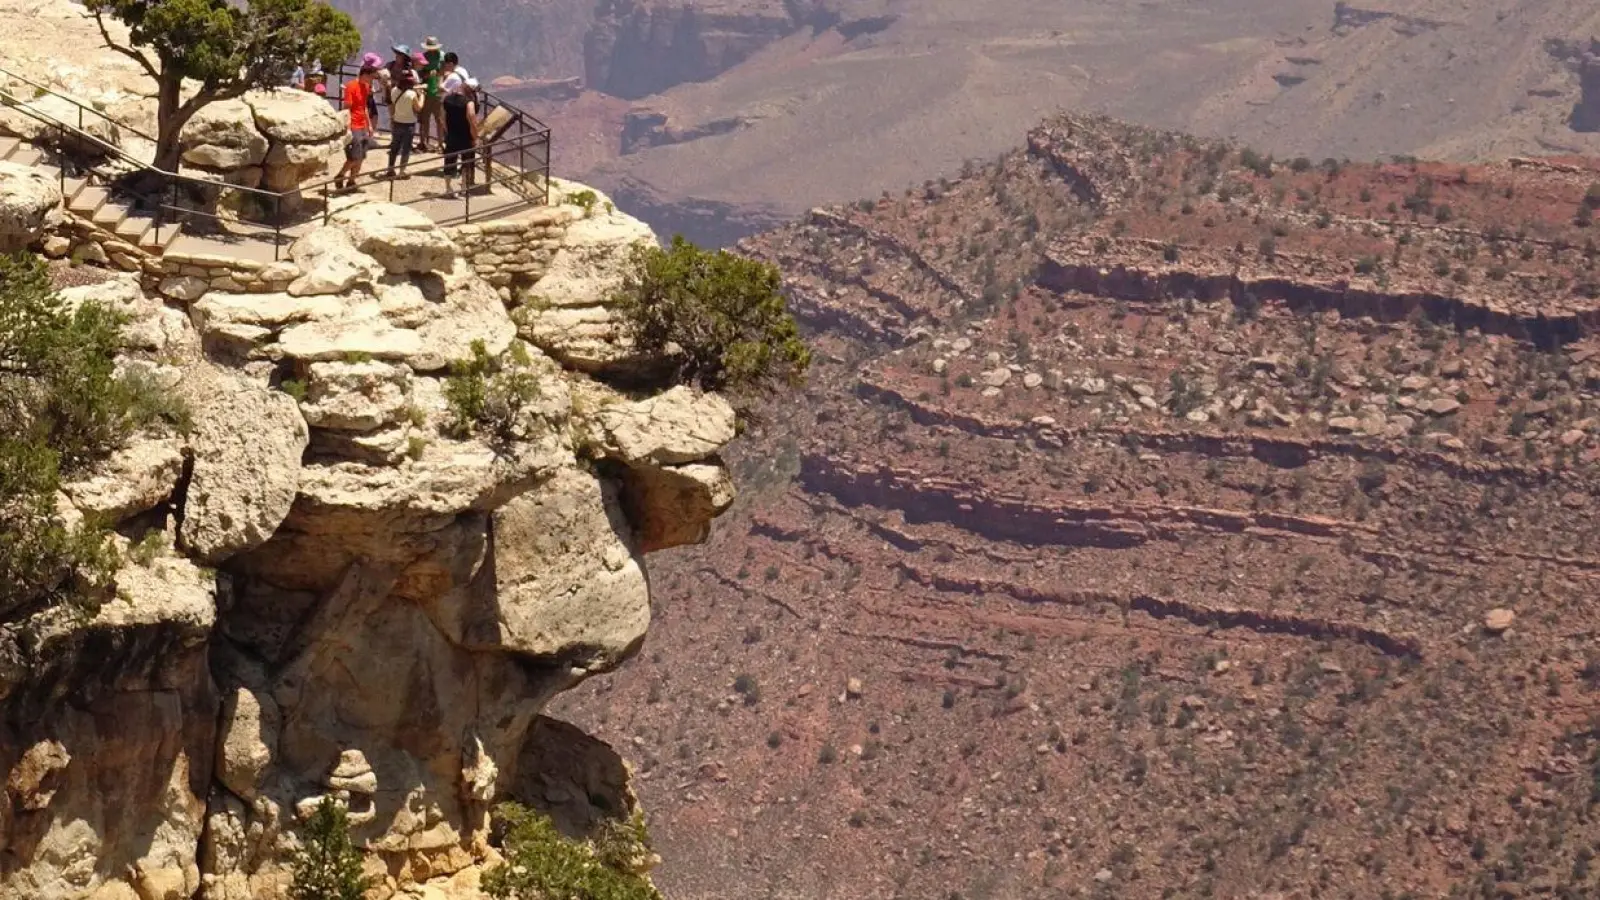 Bei den „Free Entrance Days“ können Nationalparks wie der Grand Canyon ohne Eintrittsgebühr besucht werden. Zusatzgebühren, etwa für Camping oder Touren, fallen aber auch an diesen Tagen an. (Foto: Andrea Warnecke/dpa-tmn)